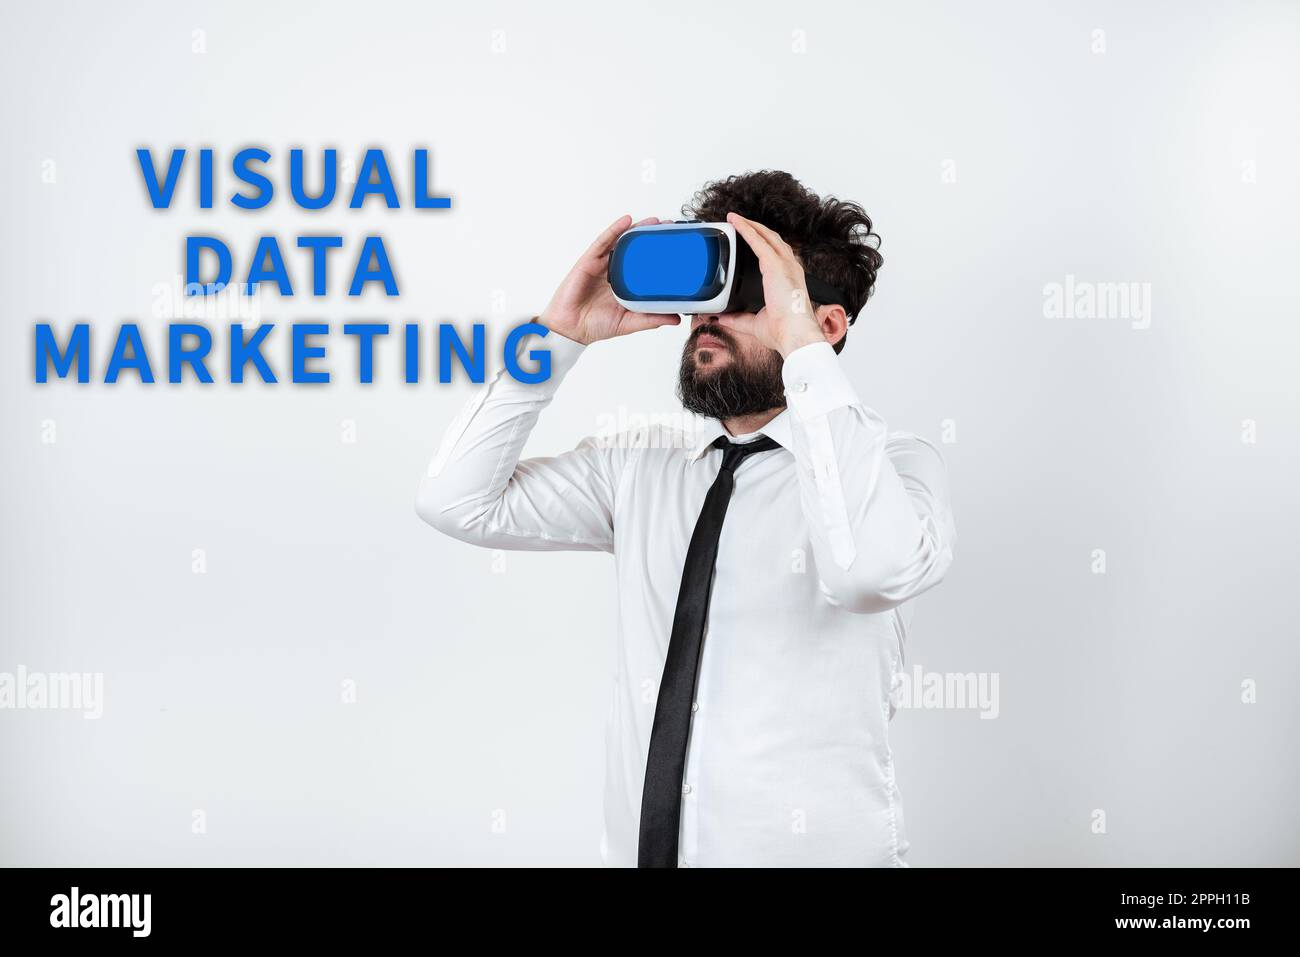 Écriture affichant du texte Visual Data Marketing. Idée commerciale utilisez des images pour transmettre des informations sous forme visuelle Banque D'Images